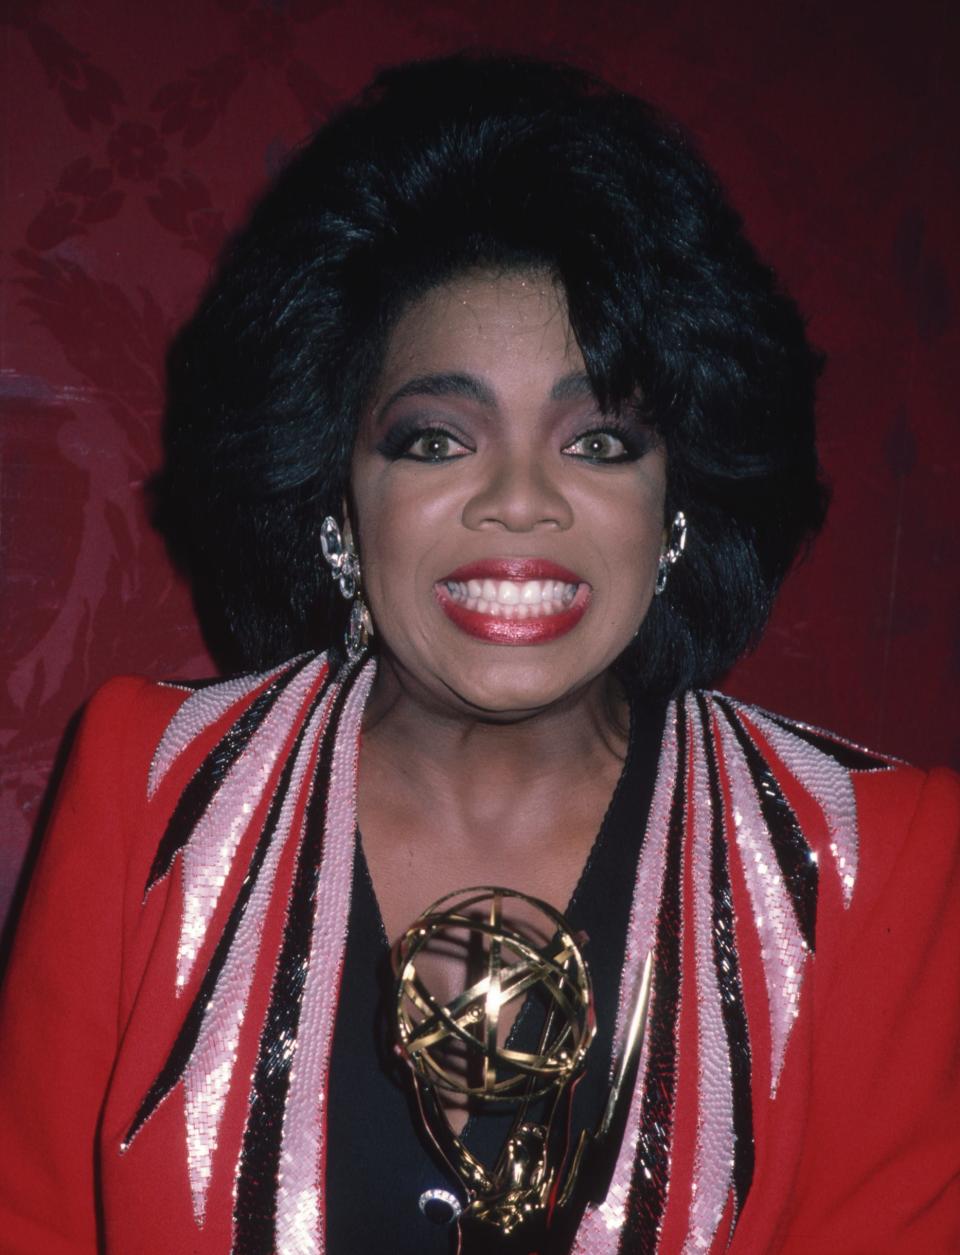 Oprah smiling while holding an award